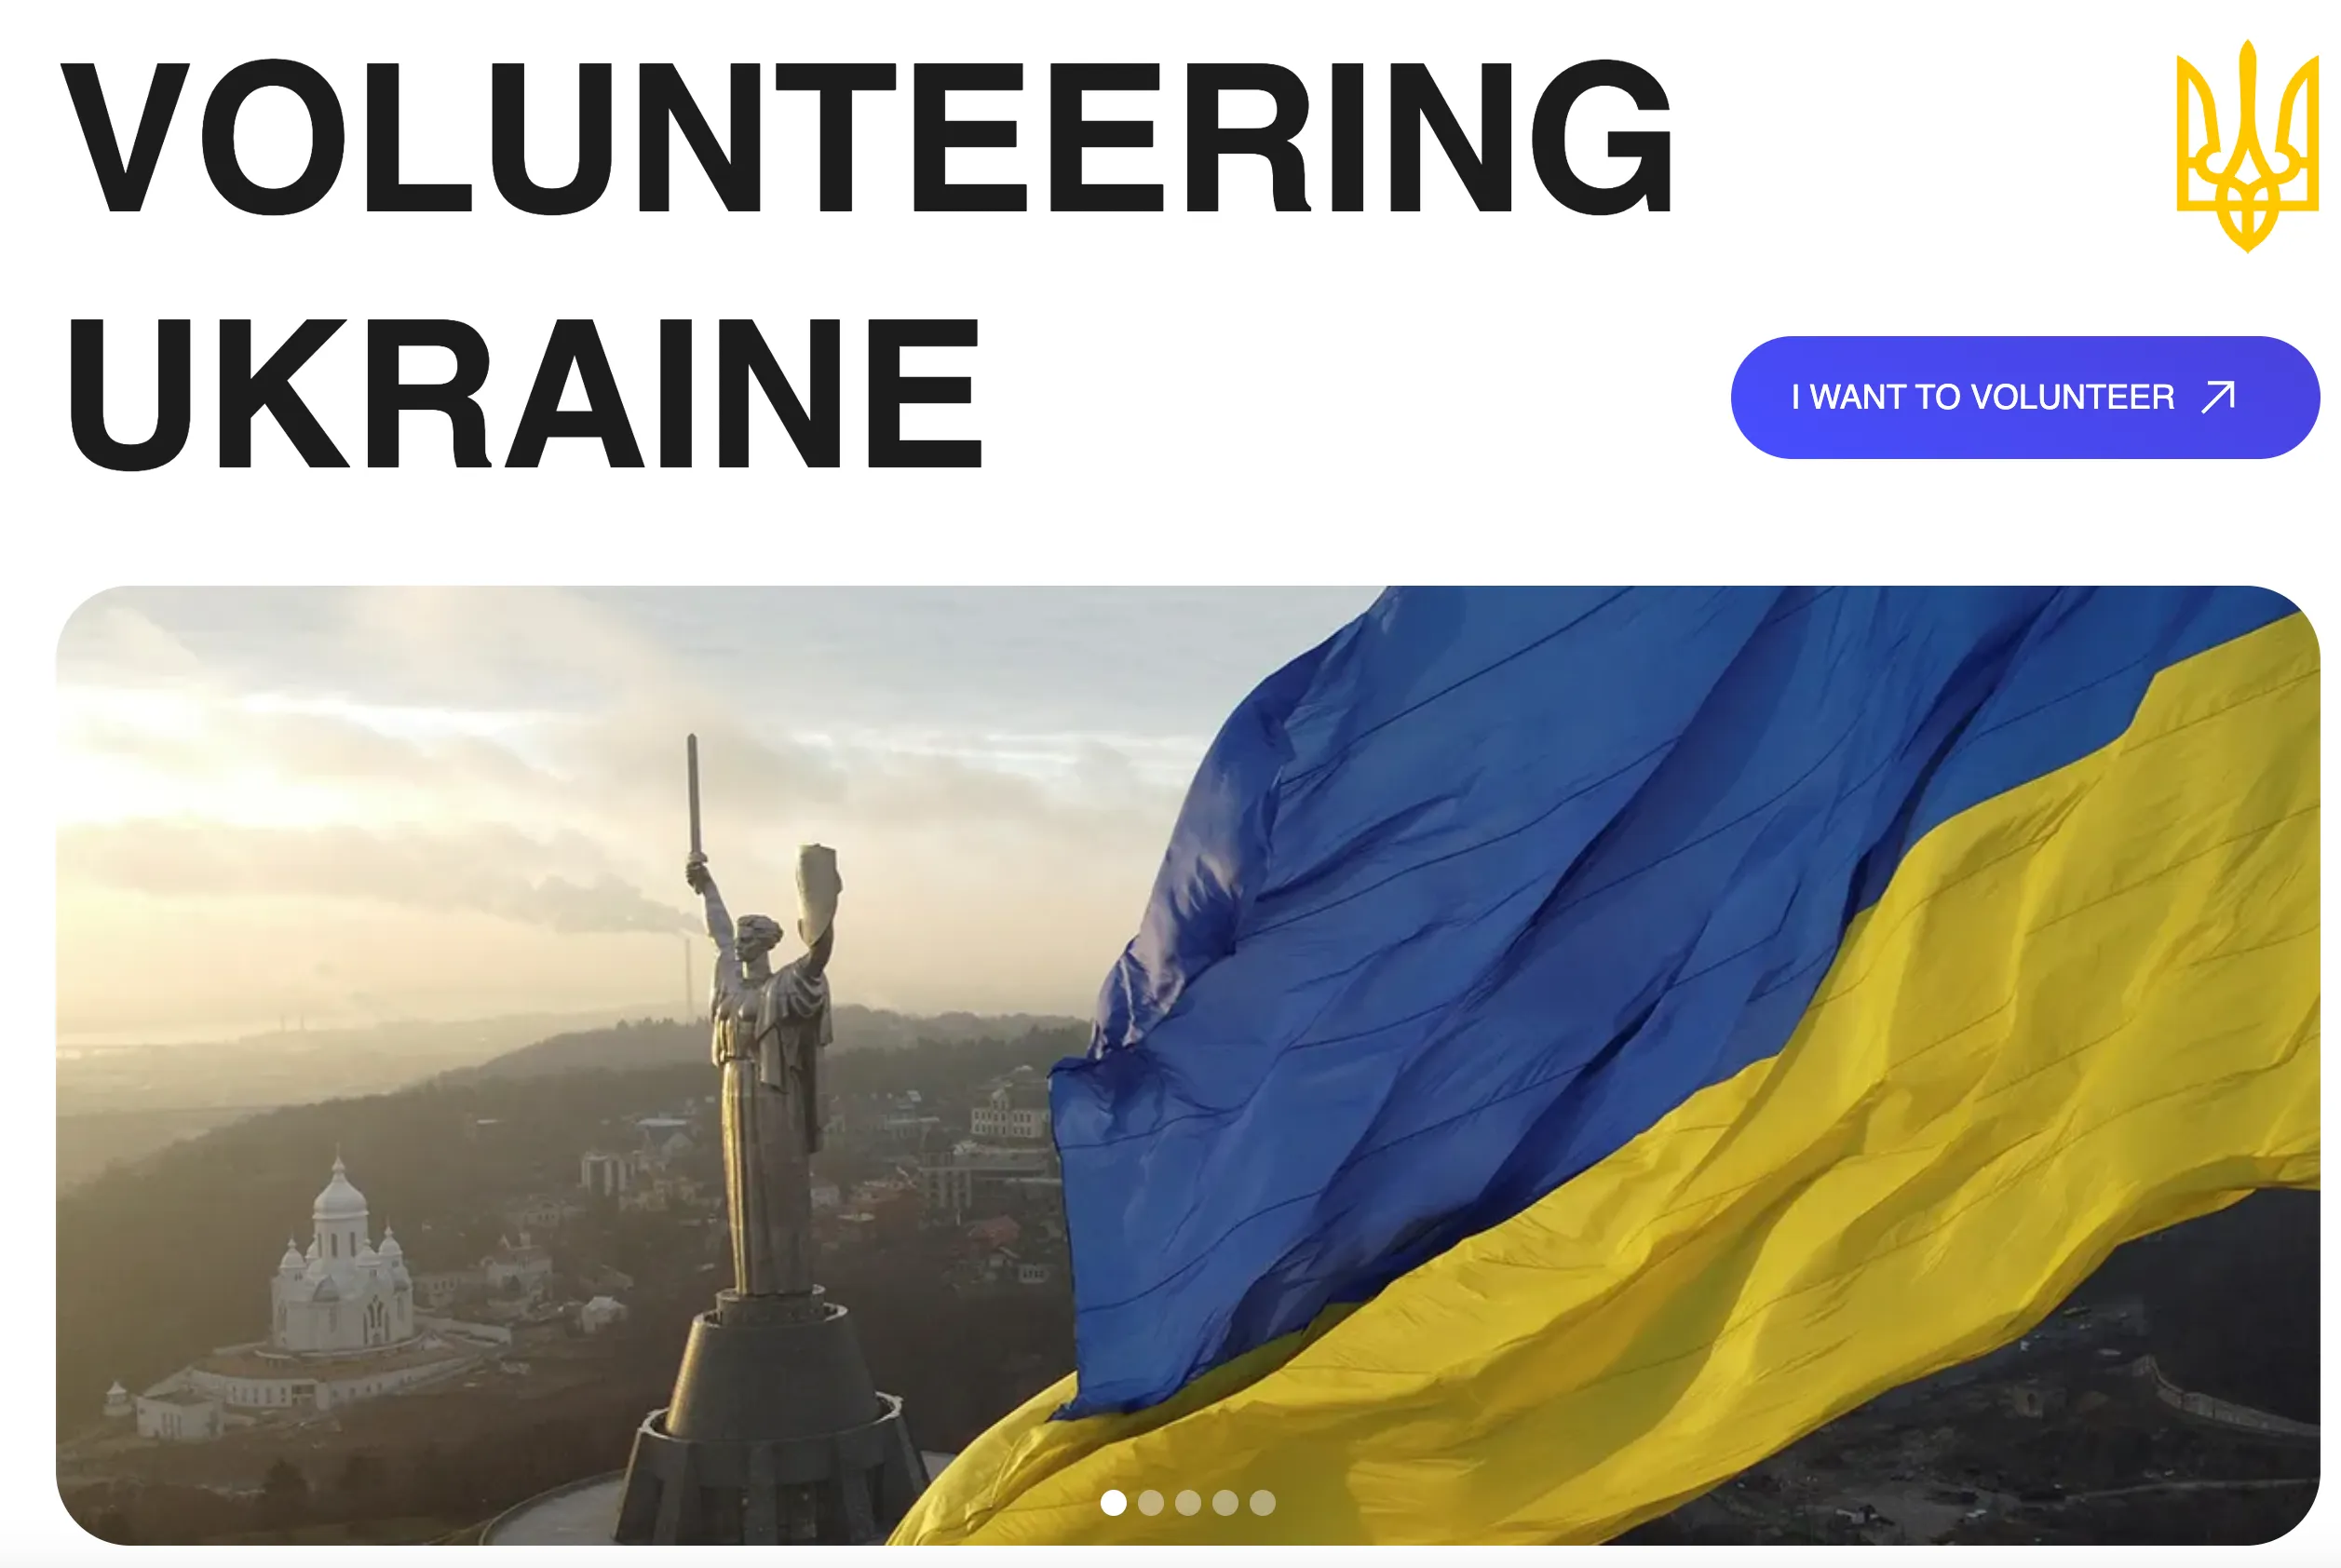 www.volunteeringukraine.com